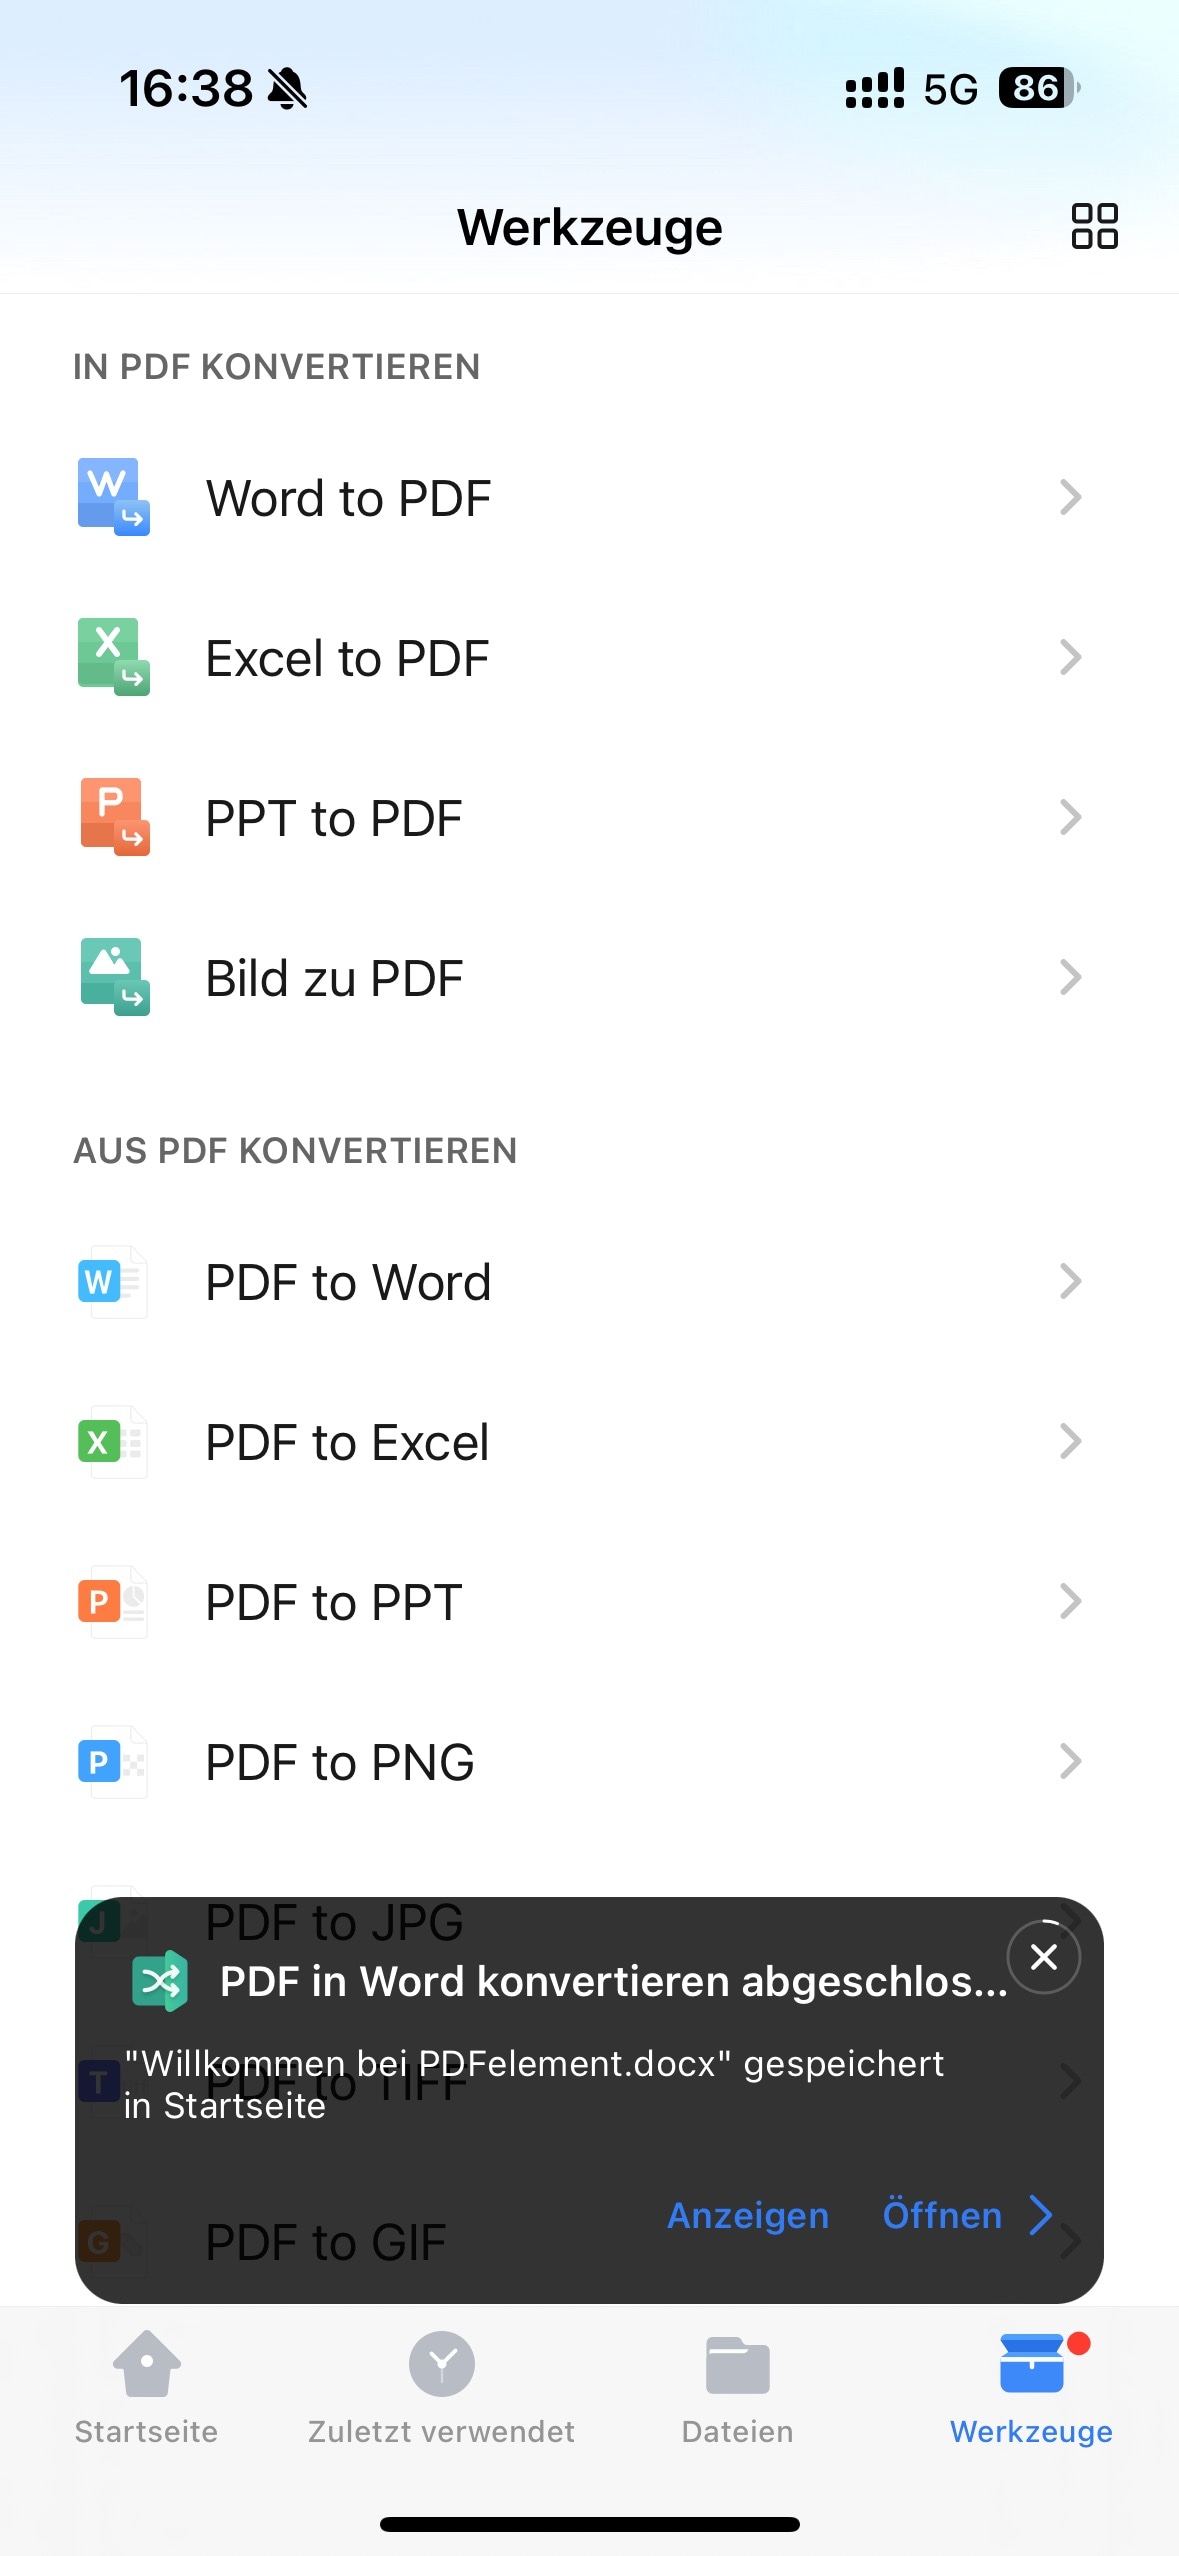 In nur wenigen Sekunden schließt PDFelement die Konvertierung ab und zeigt „PDF-zu-Word-Konvertierung abgeschlossen“ auf dem Bildschirm an.